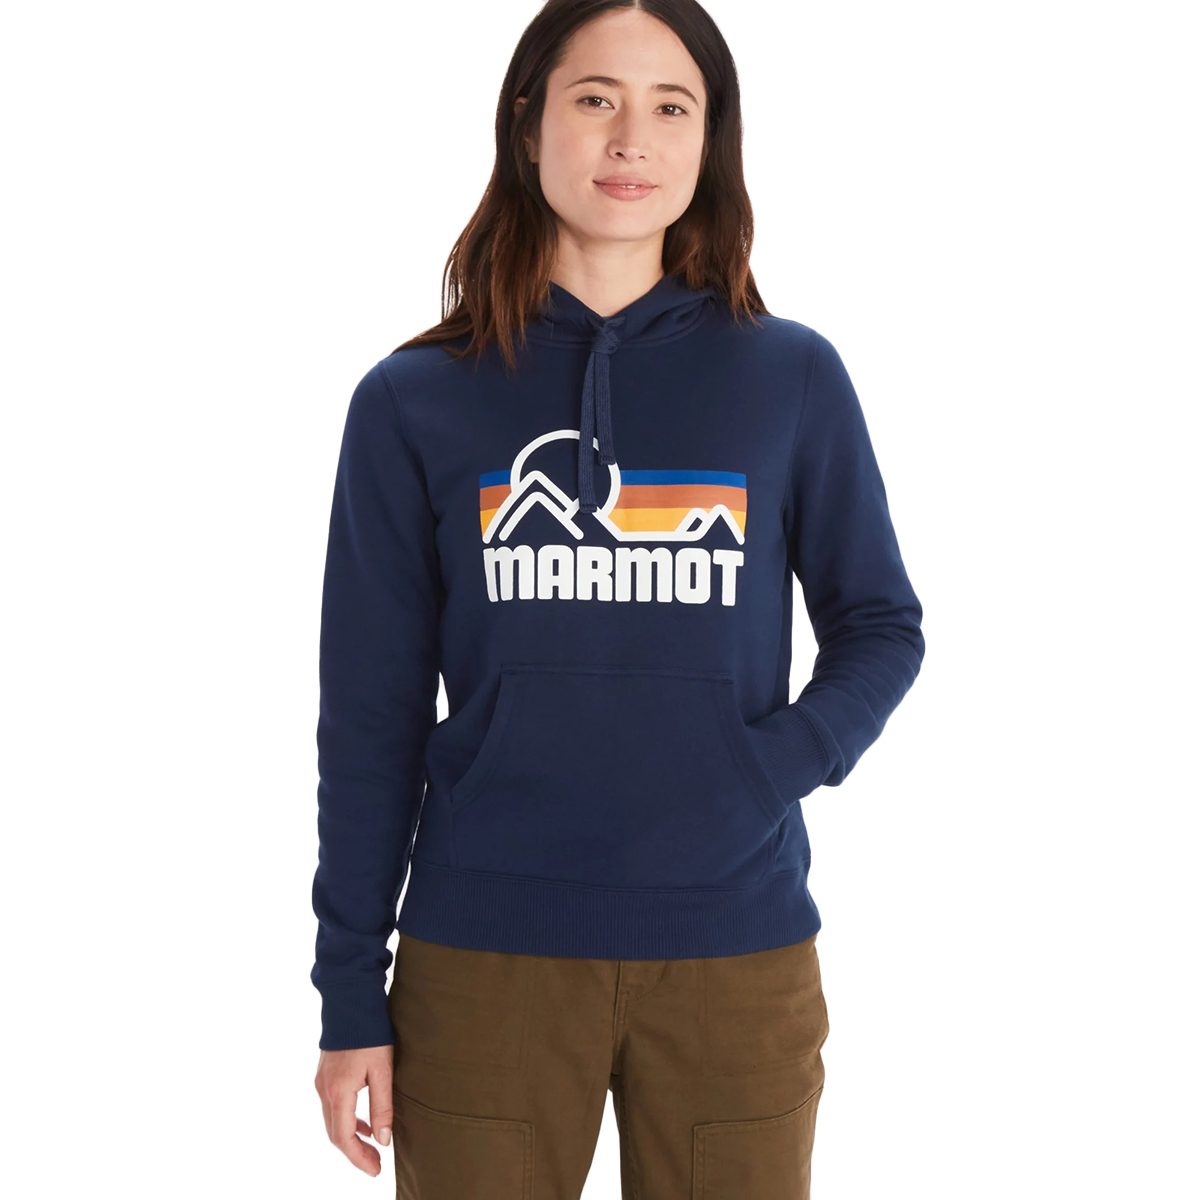 Marmot Women's Coastal Hoody - Size XL